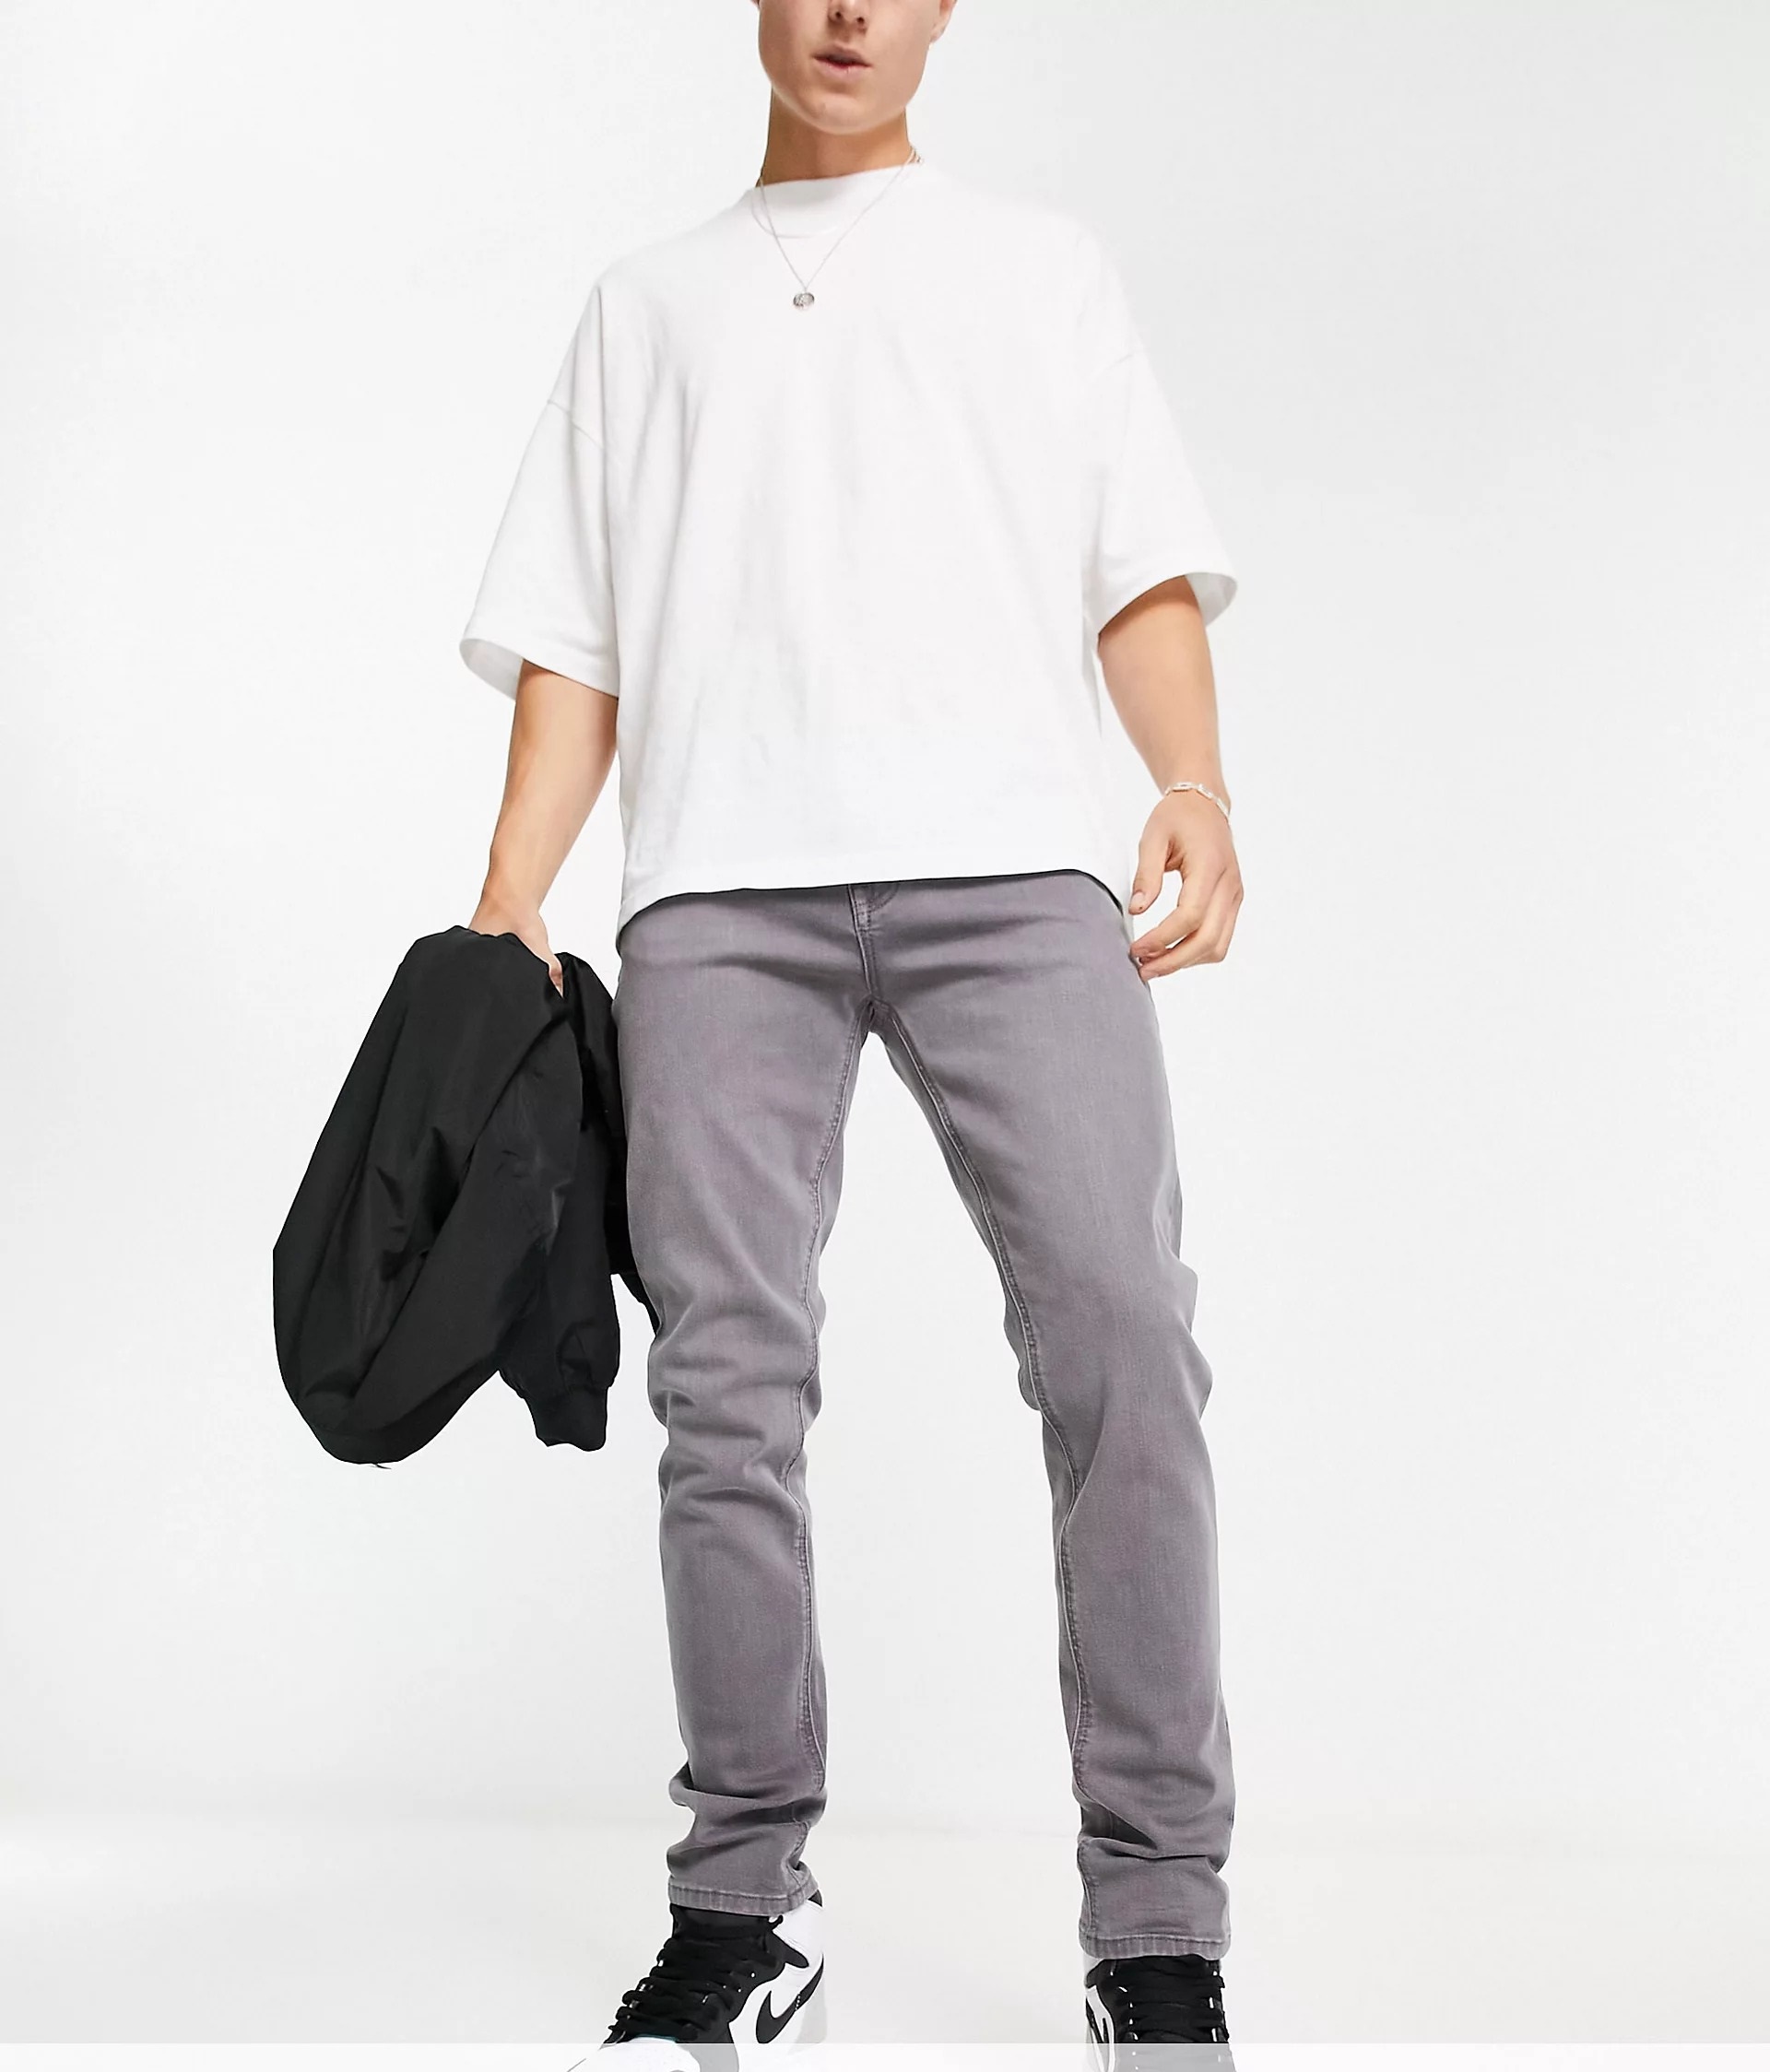 Джинсы Asos Design Skinny, серый джинсы скинни стрейч marks